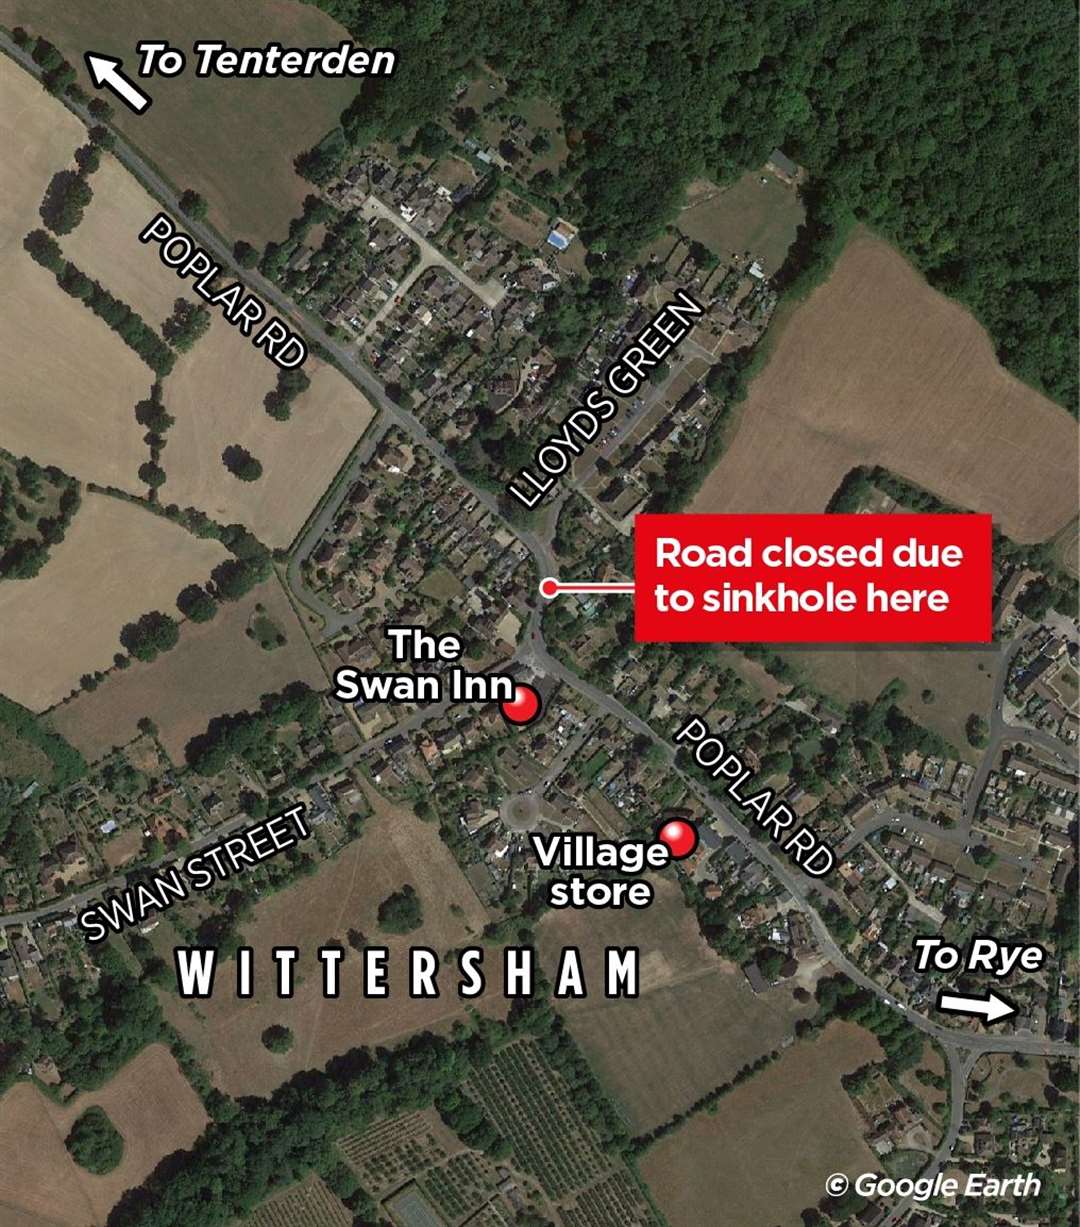 A sinkhole has closed Poplar Road in Wittersham near Tenterden